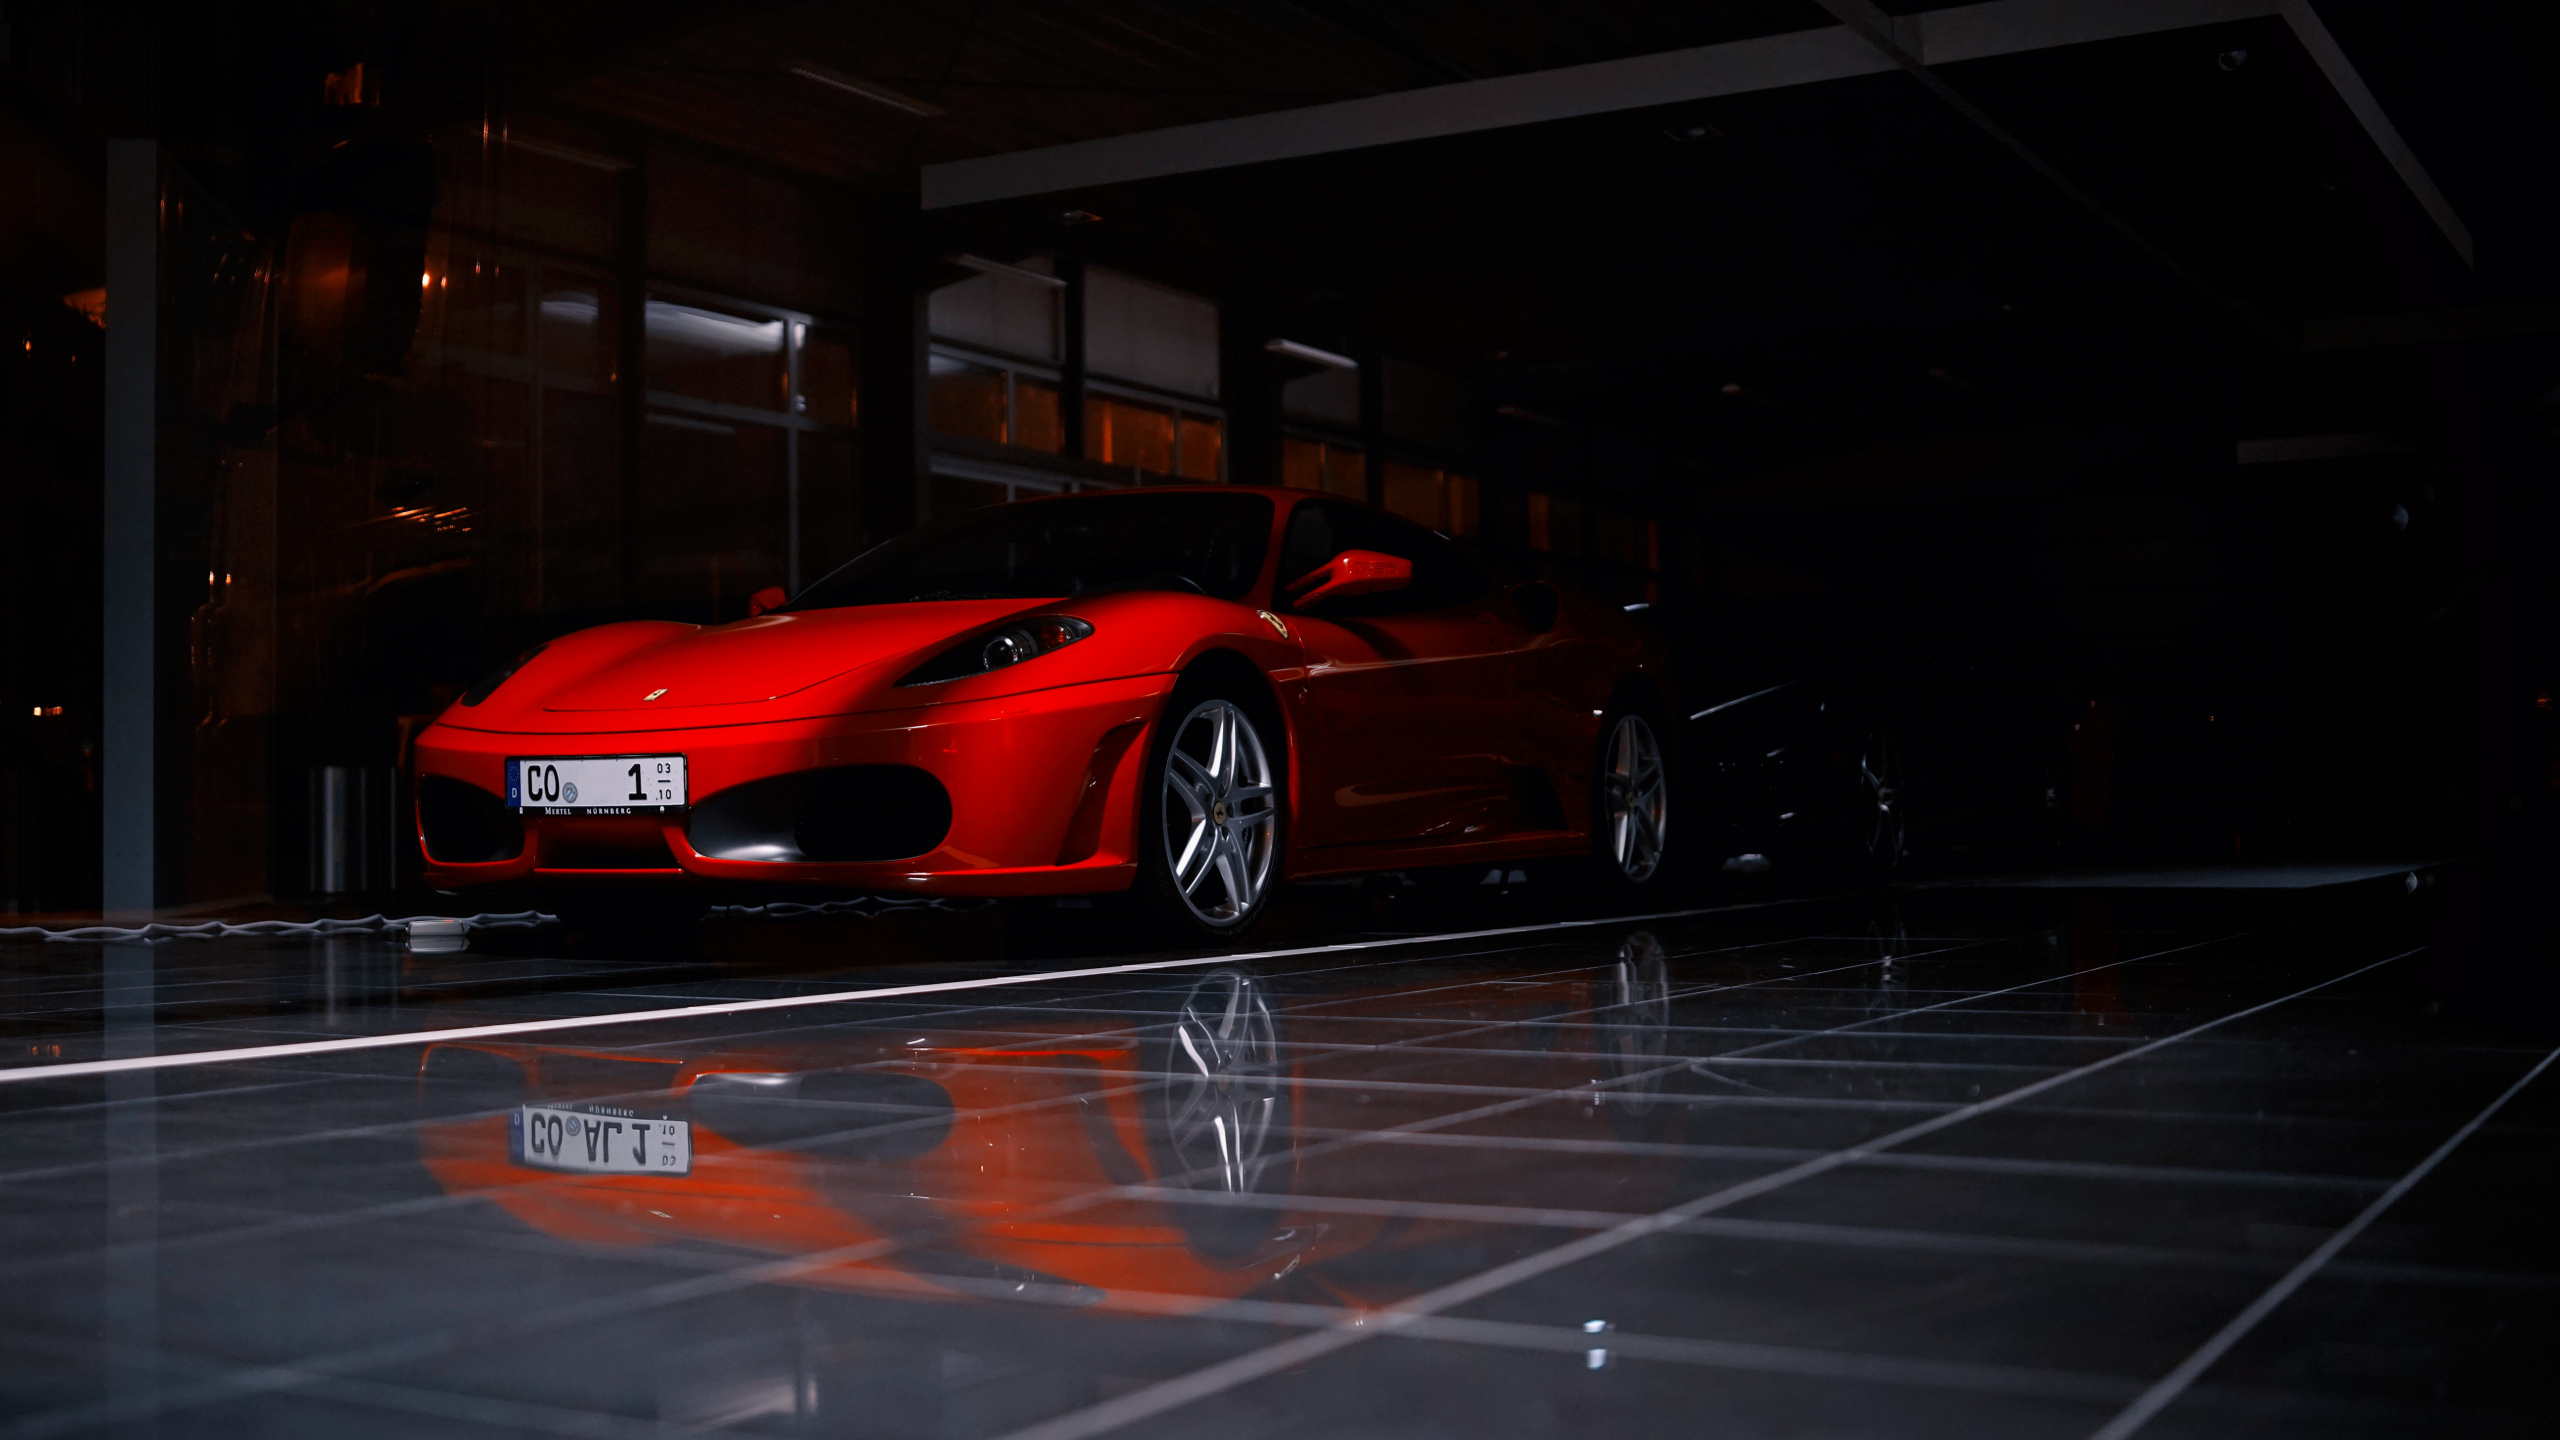 Roter Ferrari 458 Italia Auf Parkplatz Geparkt. Wallpaper in 2560x1440 Resolution